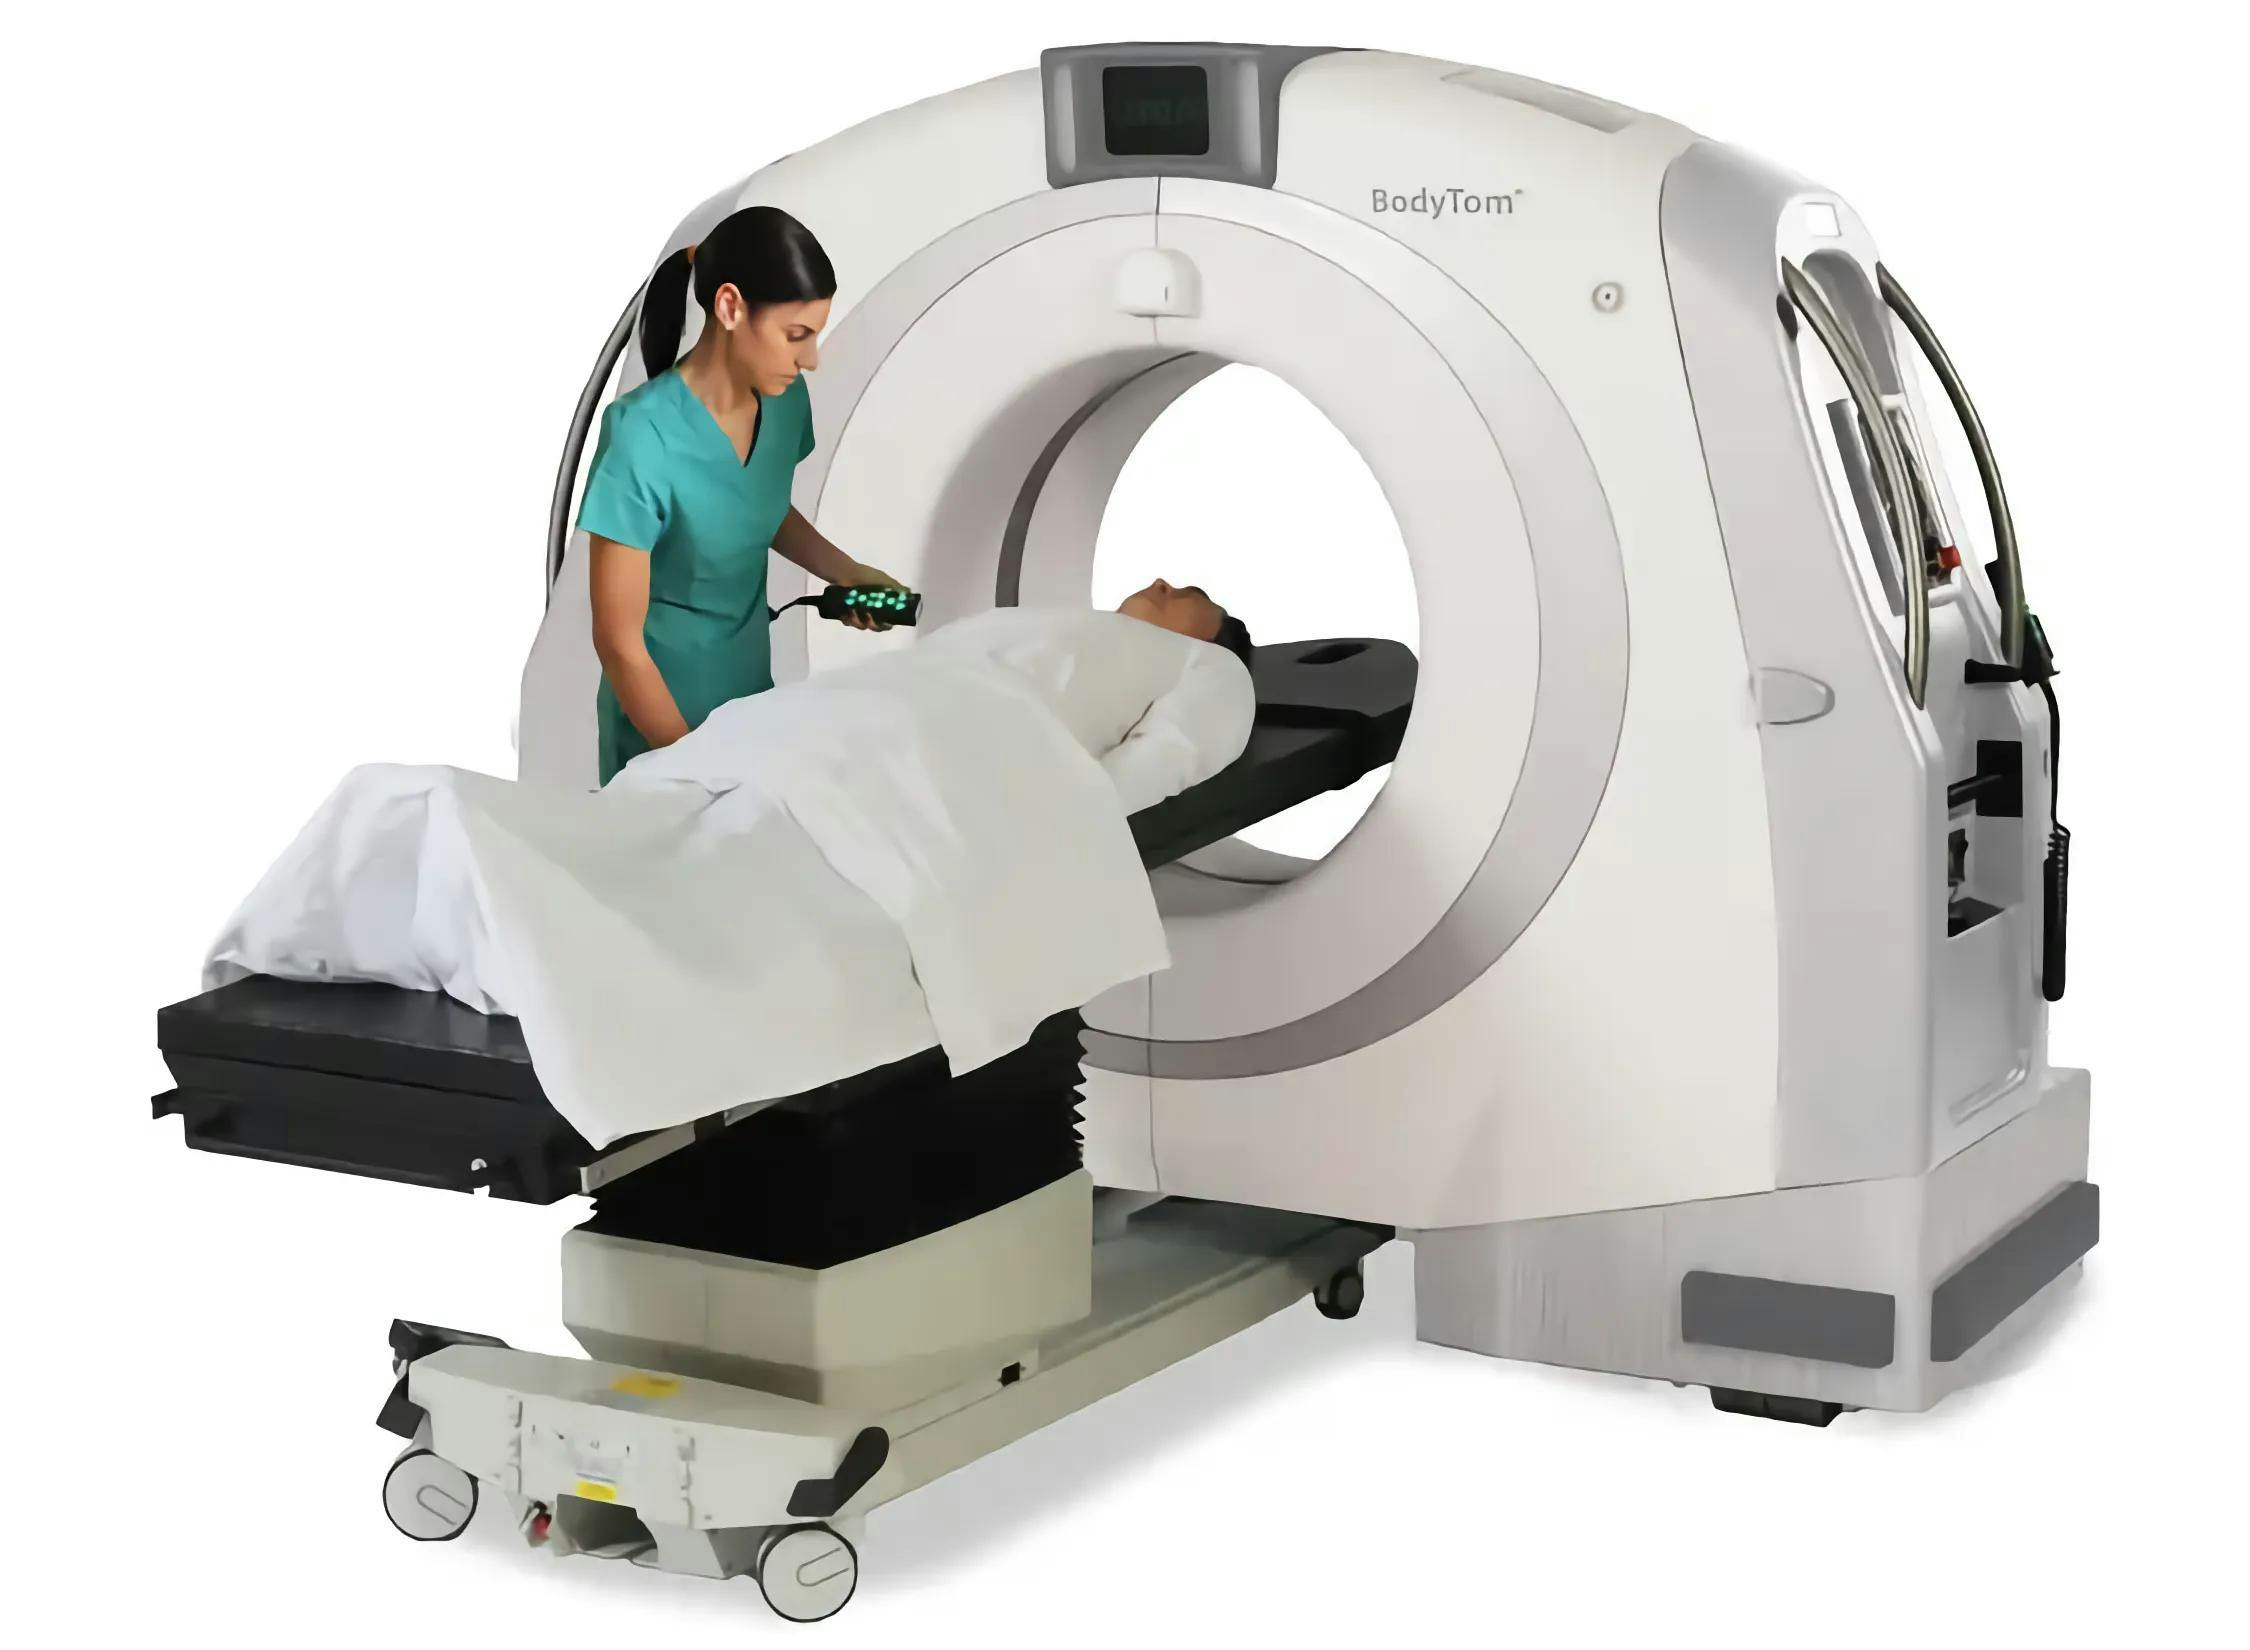 Мобильный компьютерный томограф Neurologica BodyTom / CereTom для использования в: операционных, реанимациях и отделениях лучевой диагностики